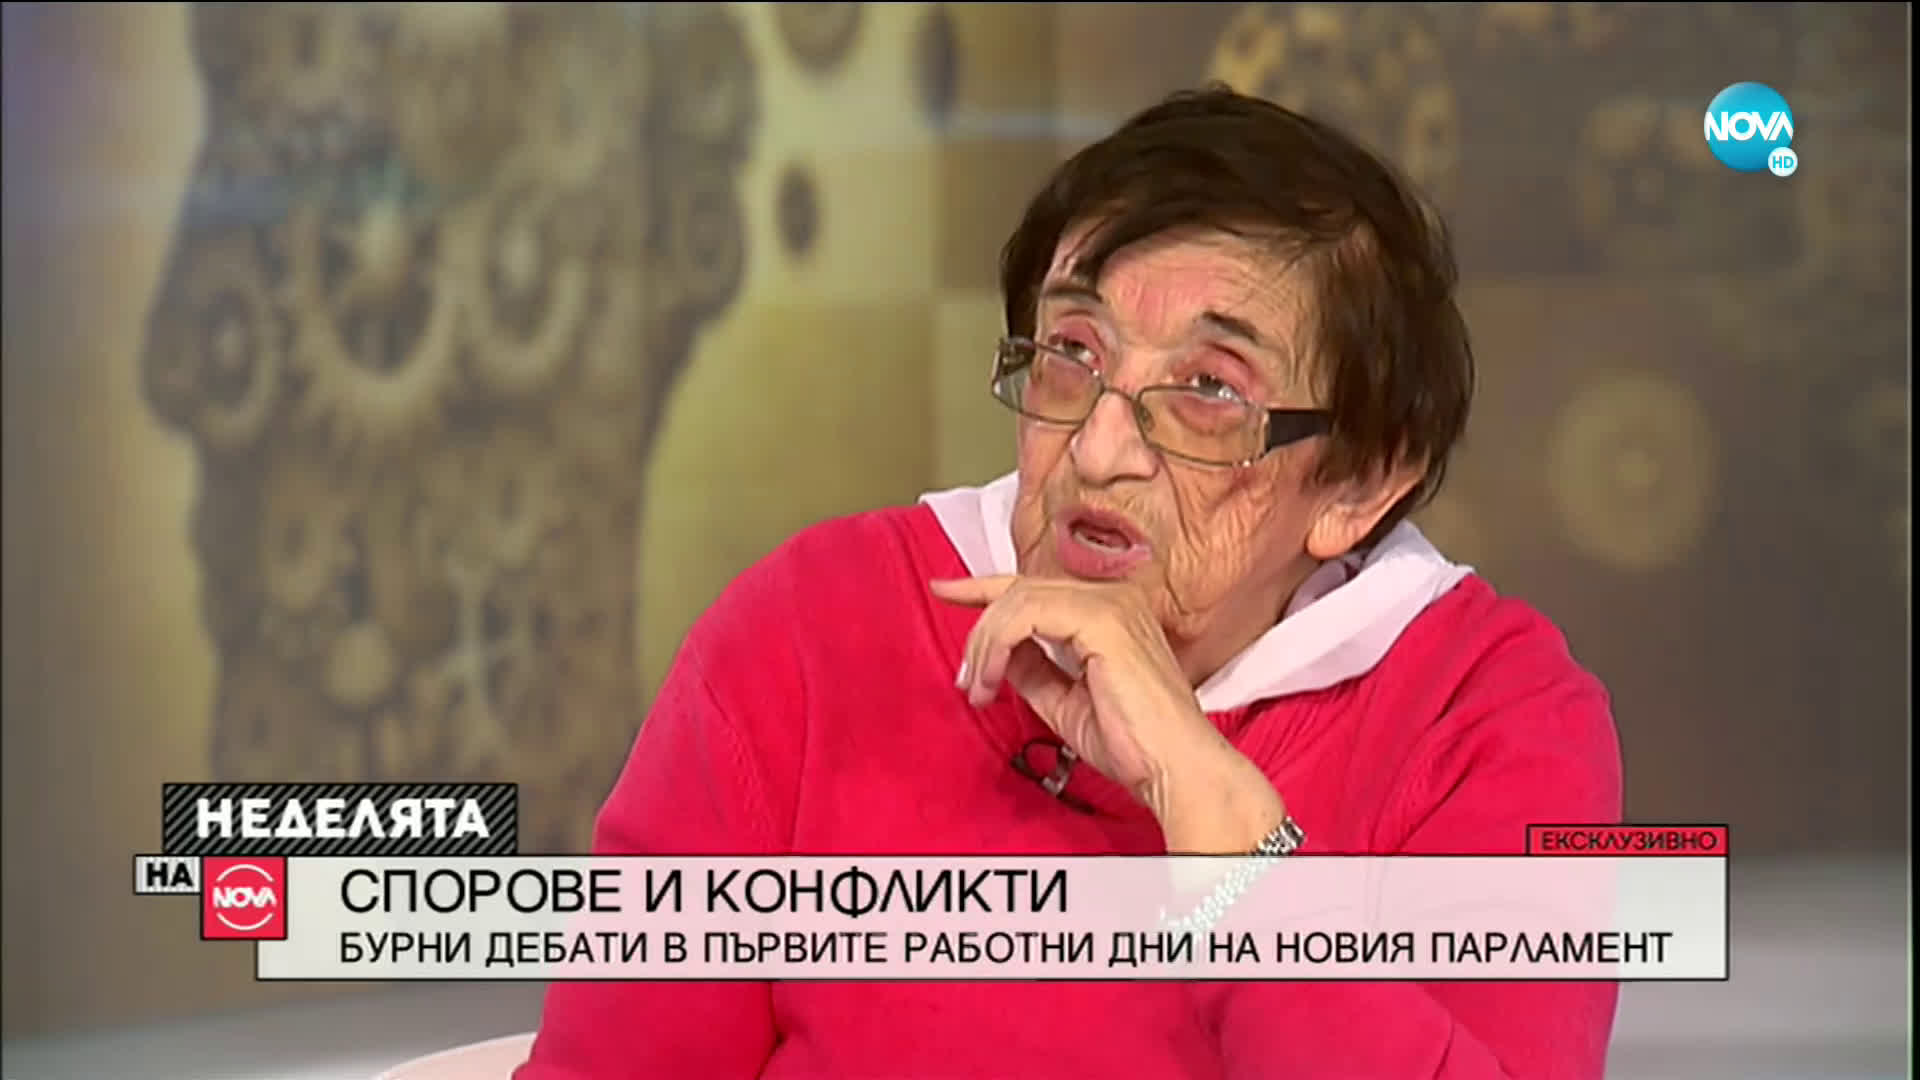 Мика Зайкова: На ГЕРБ им е поръчано да саботират парламента